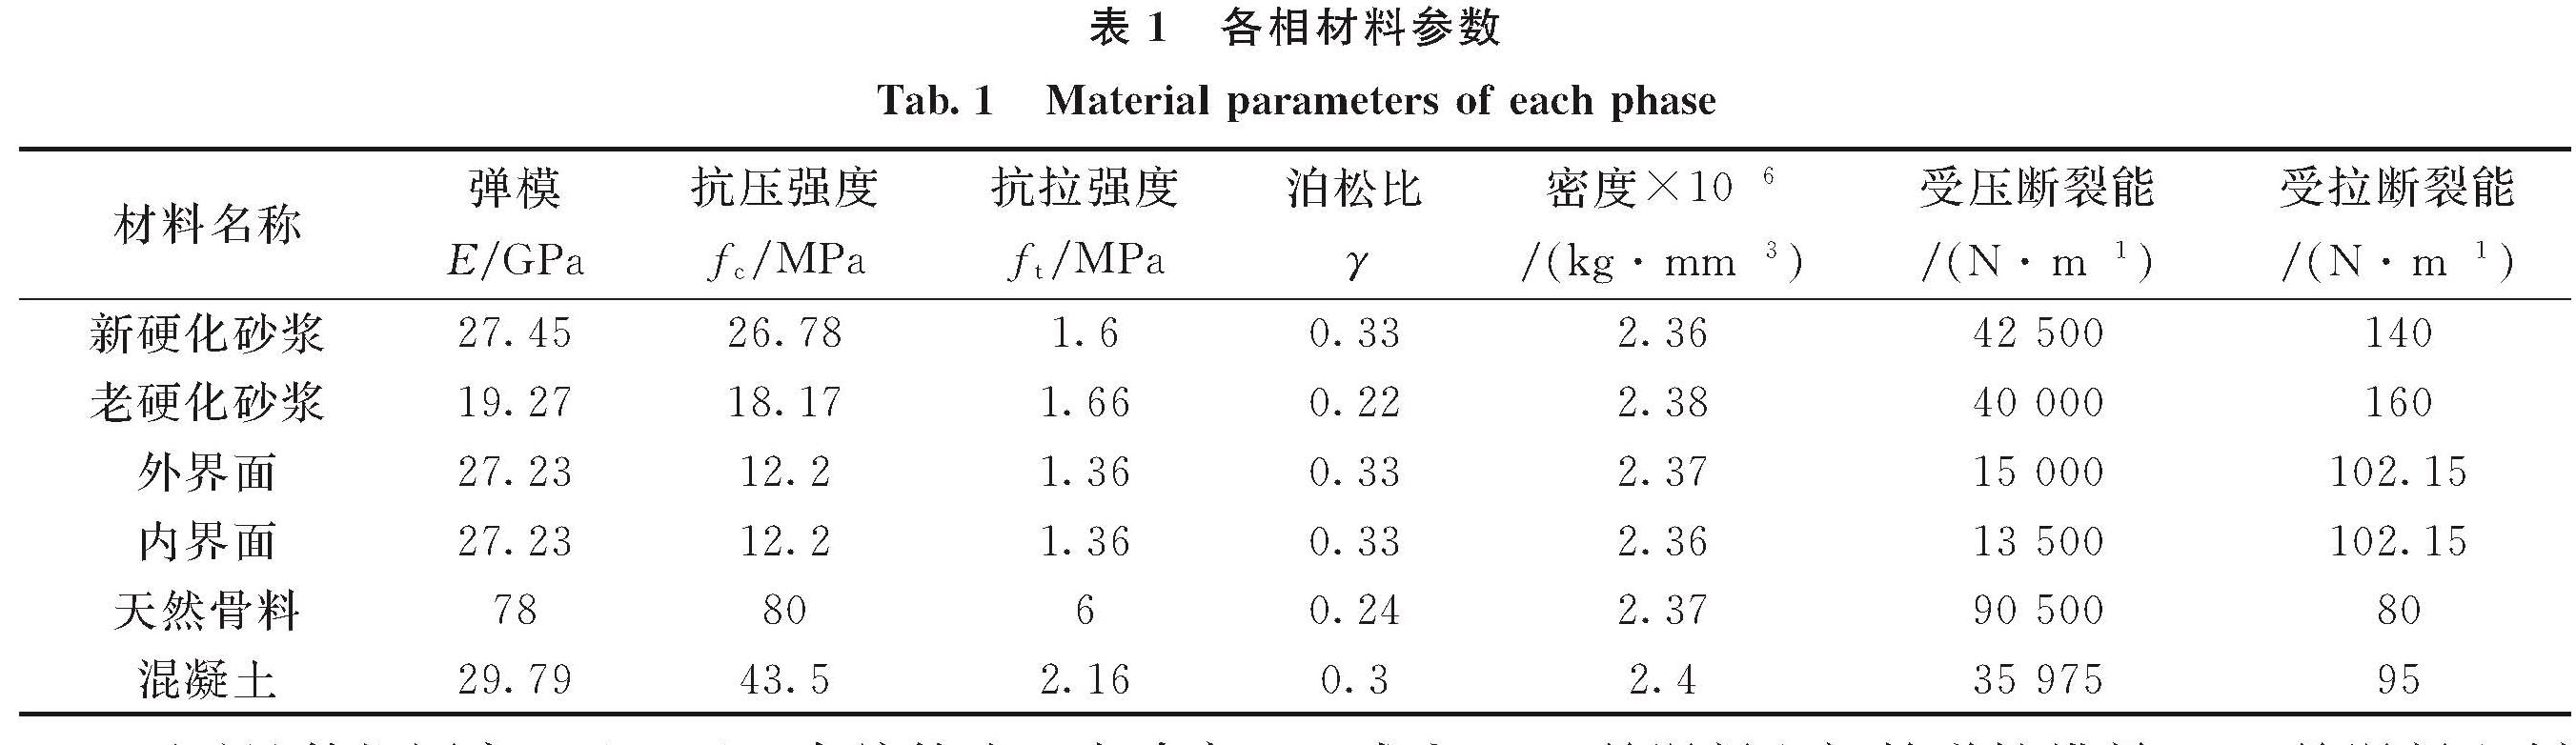 表1 各相材料参数<br/>Tab.1 Material parameters of each phase